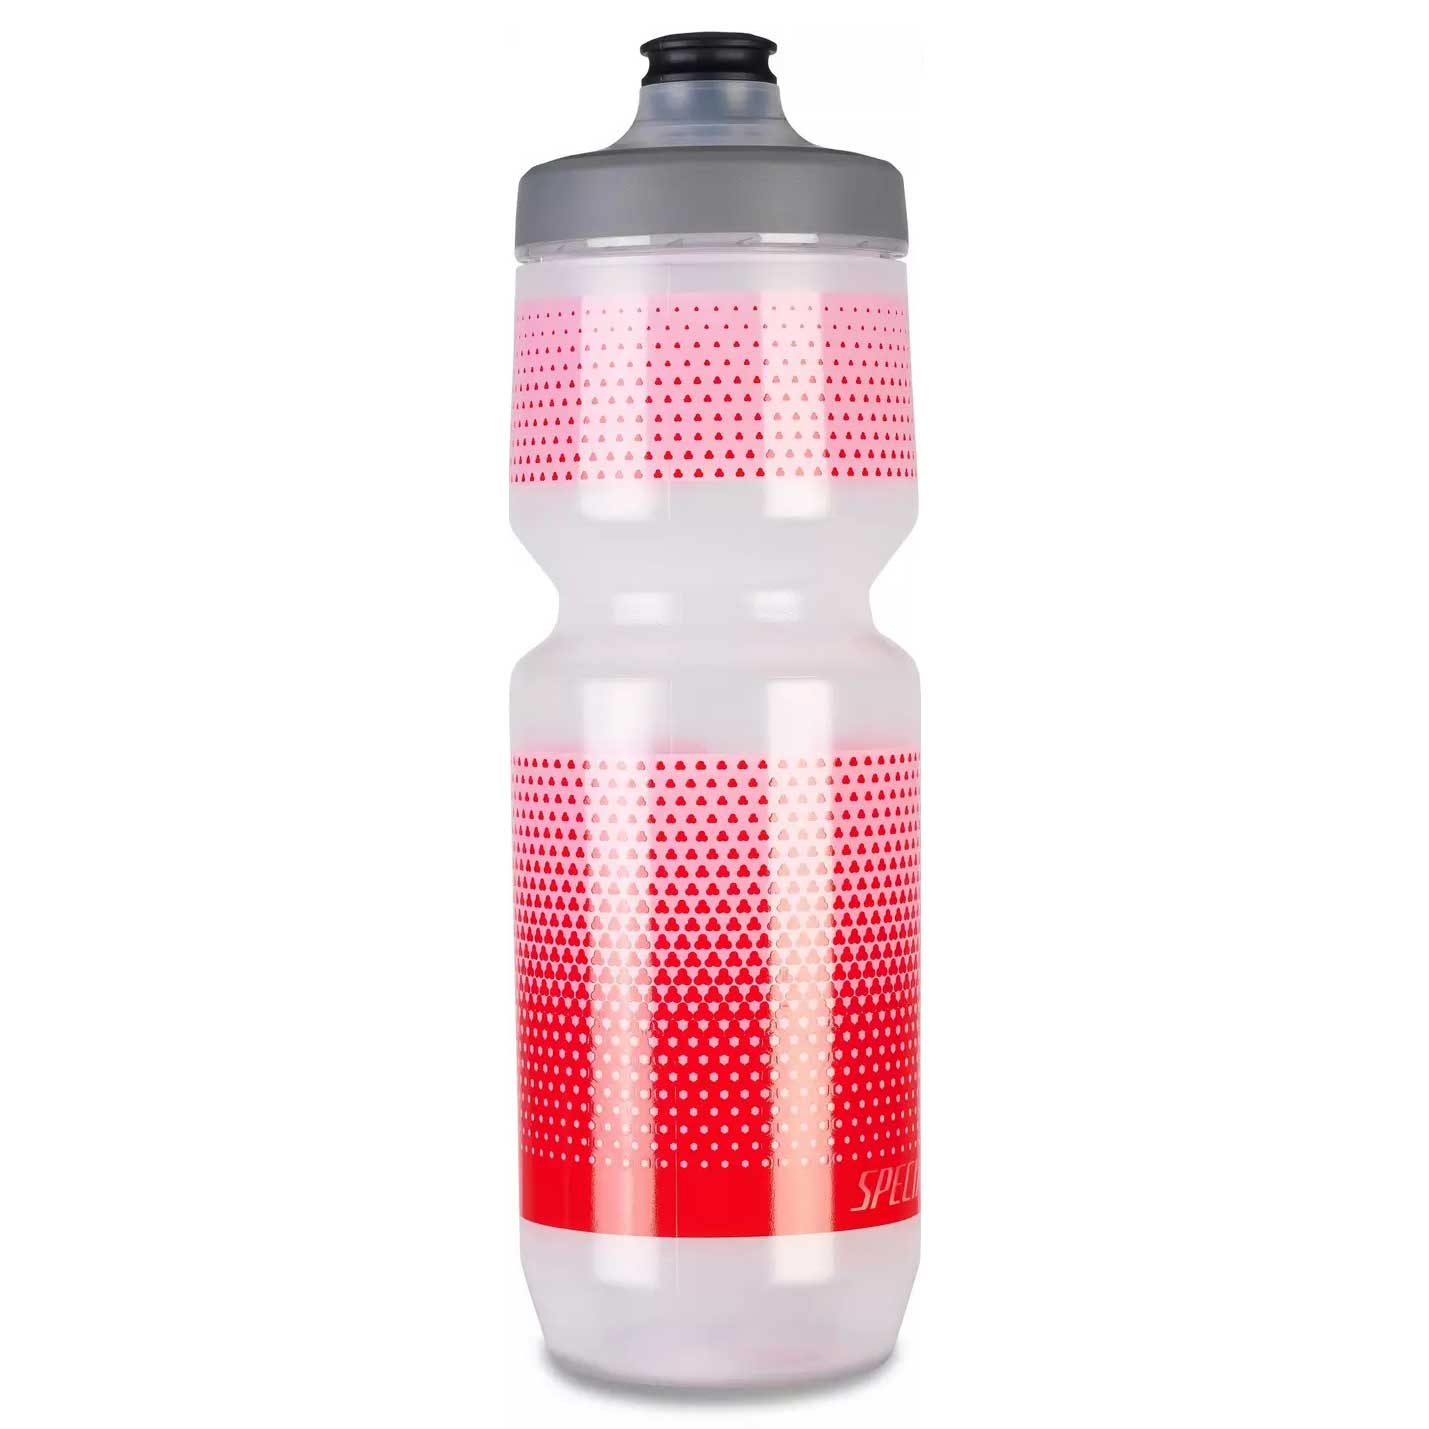 Produktbild von Specialized Purist WaterGate Trinkflasche 750ml - Translucent/Lavas Hex